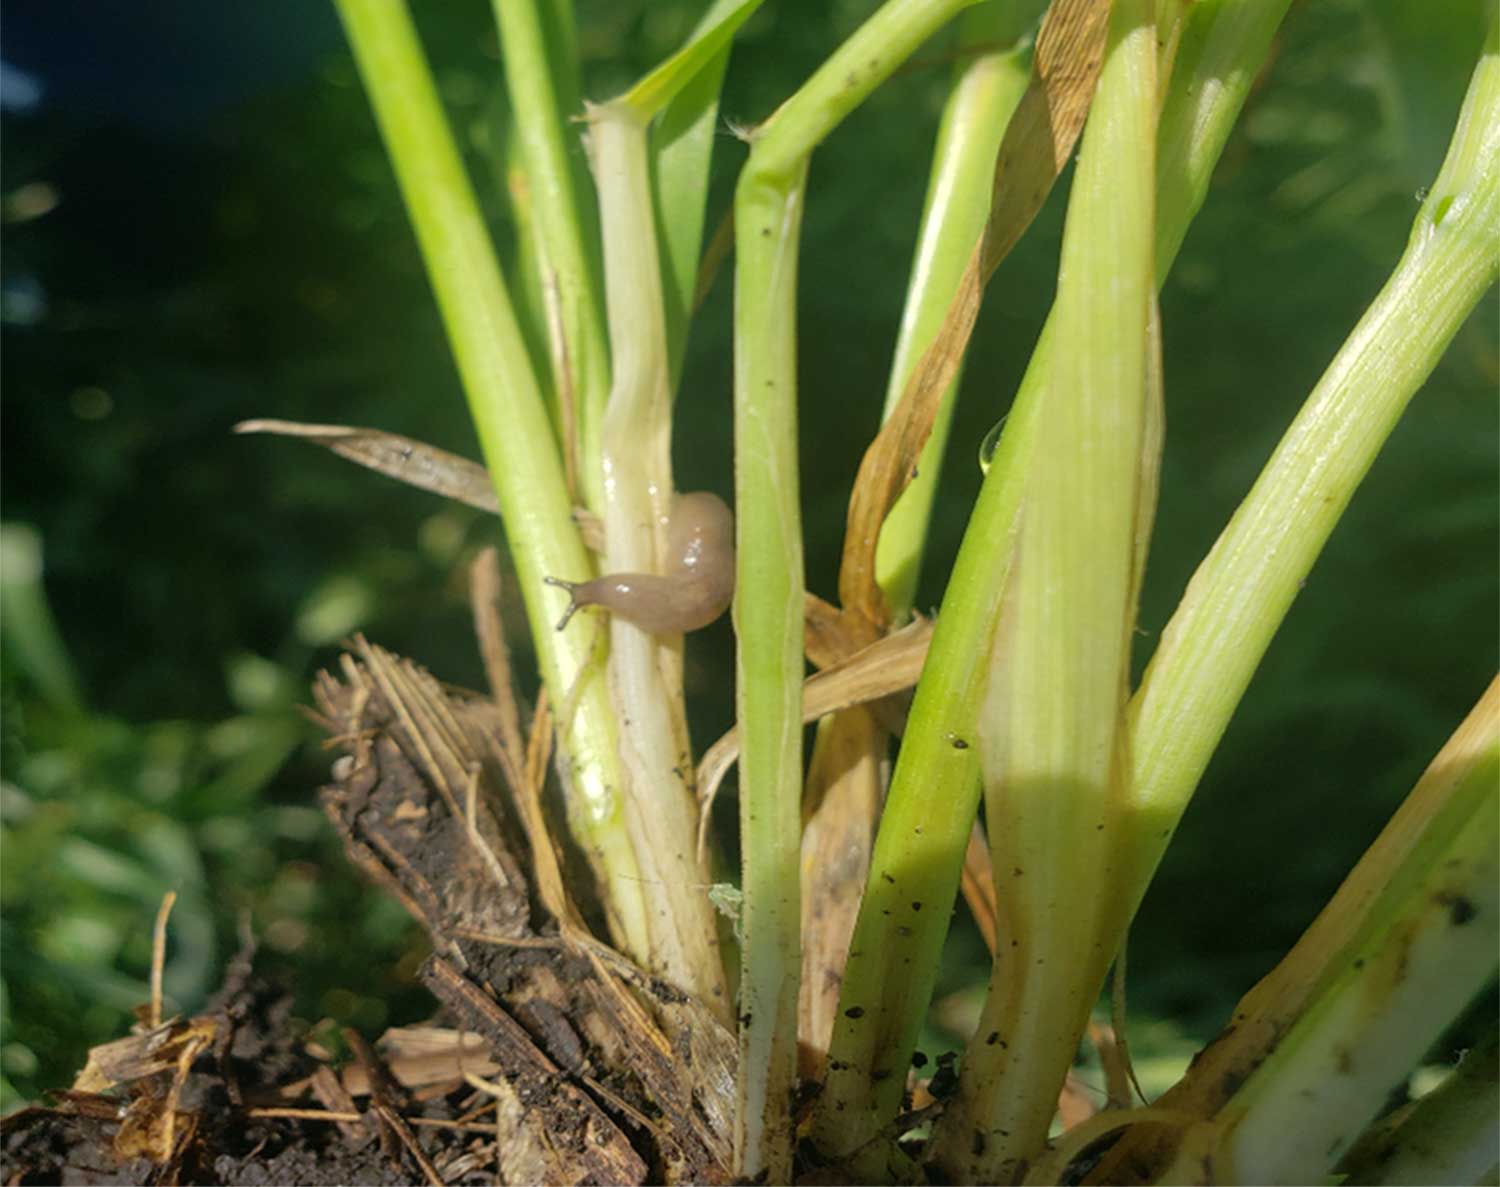 Green wheat stems with a gray slug feeding on them.